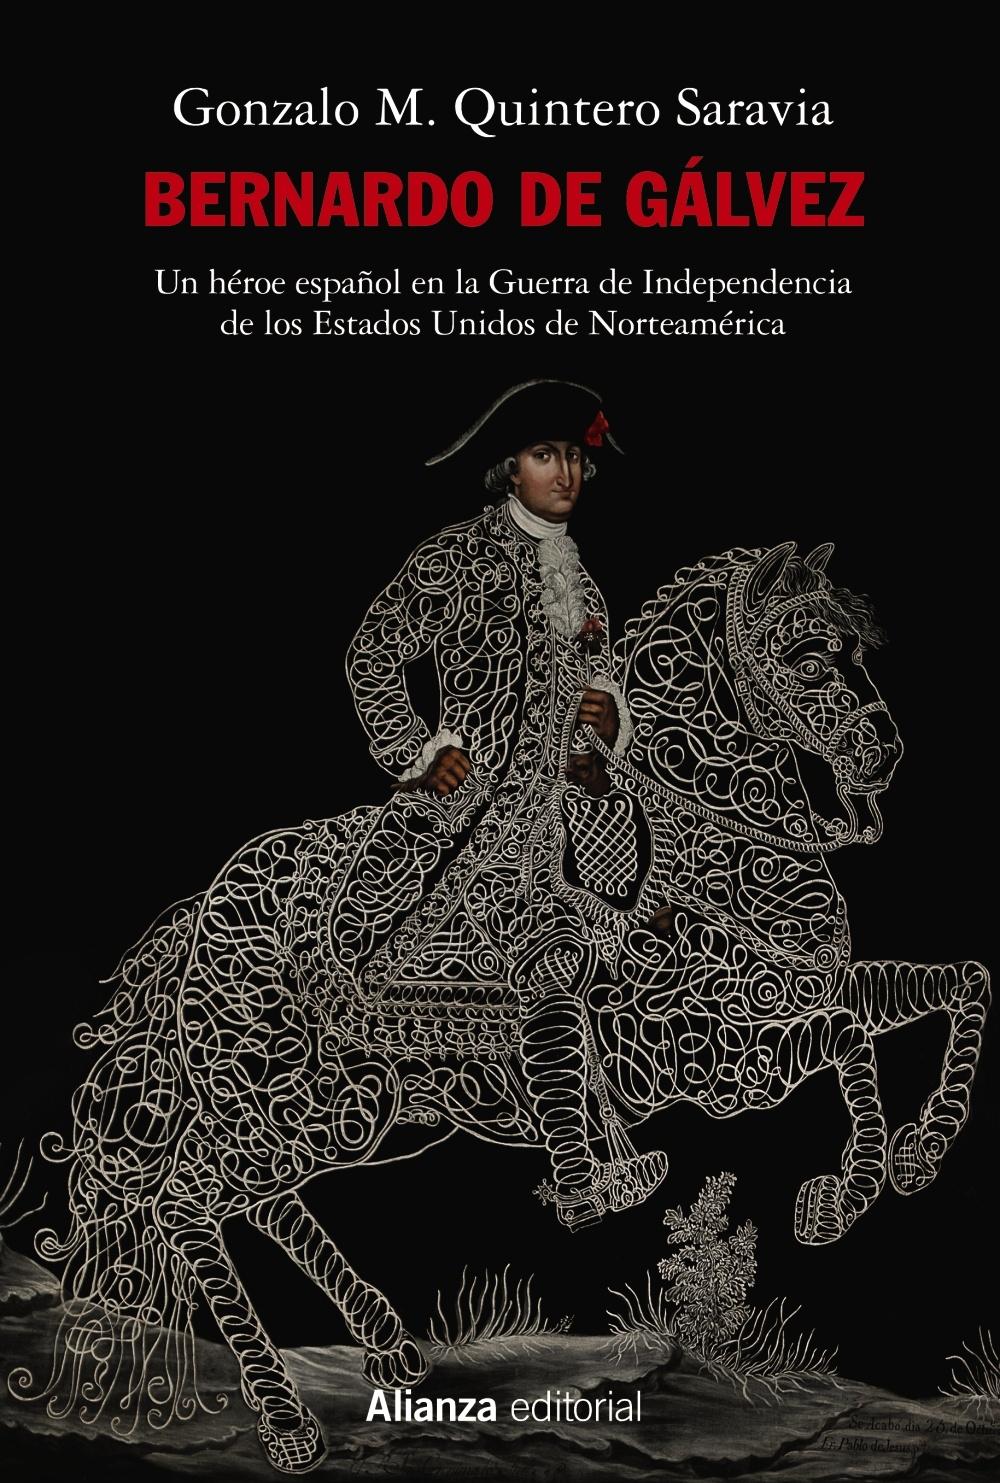 Bernardo de Gálvez "Un héroe español en la Guerra de Independencia de los Estados Unidos de Norteamérica"